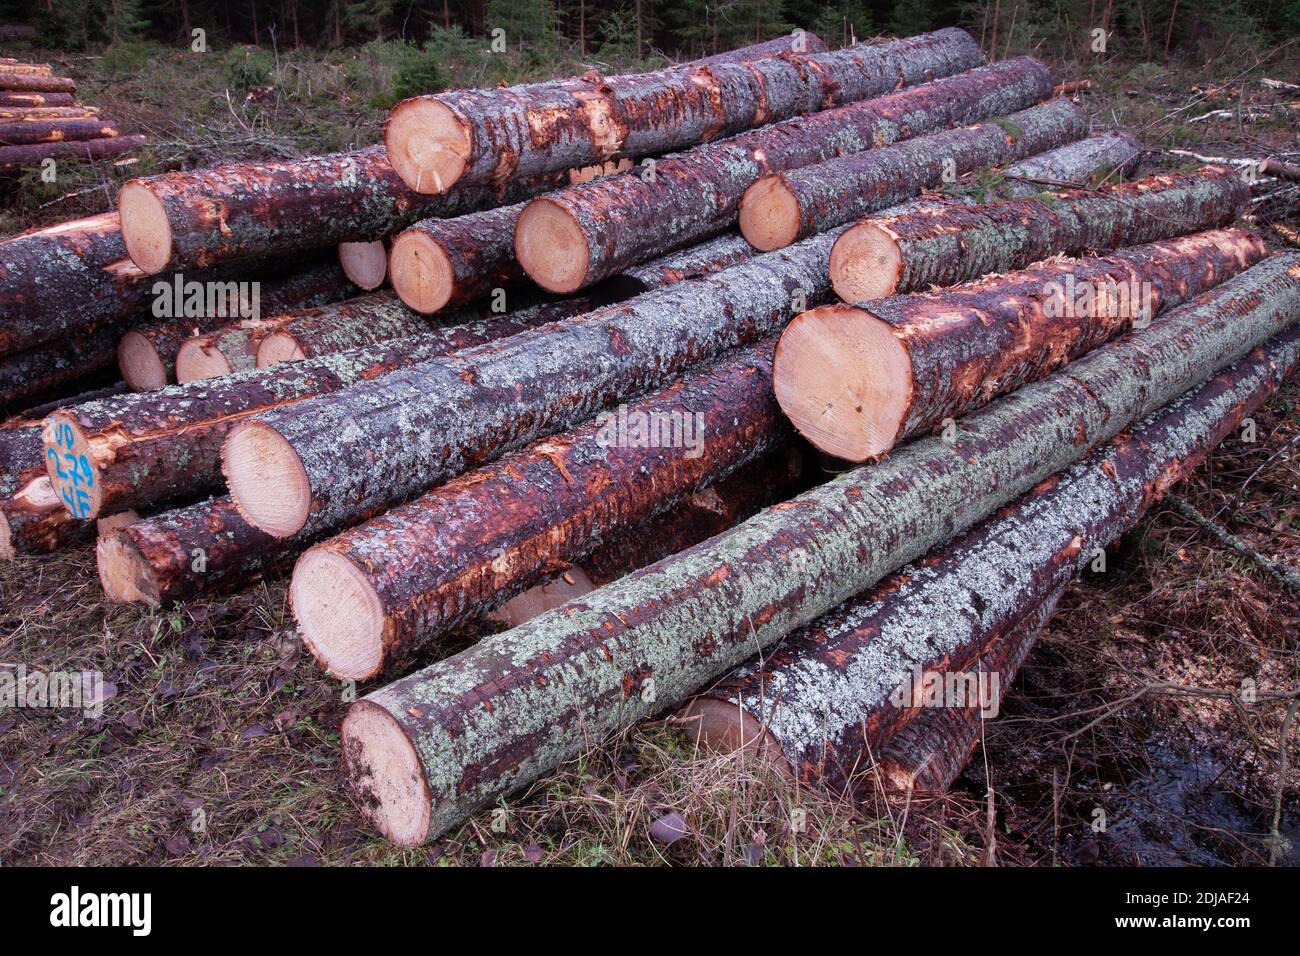 Les conifères de bois fraîchement coupés et empilés sont une ressource en matière première pour l'industrie du bois en Estonie. Banque D'Images